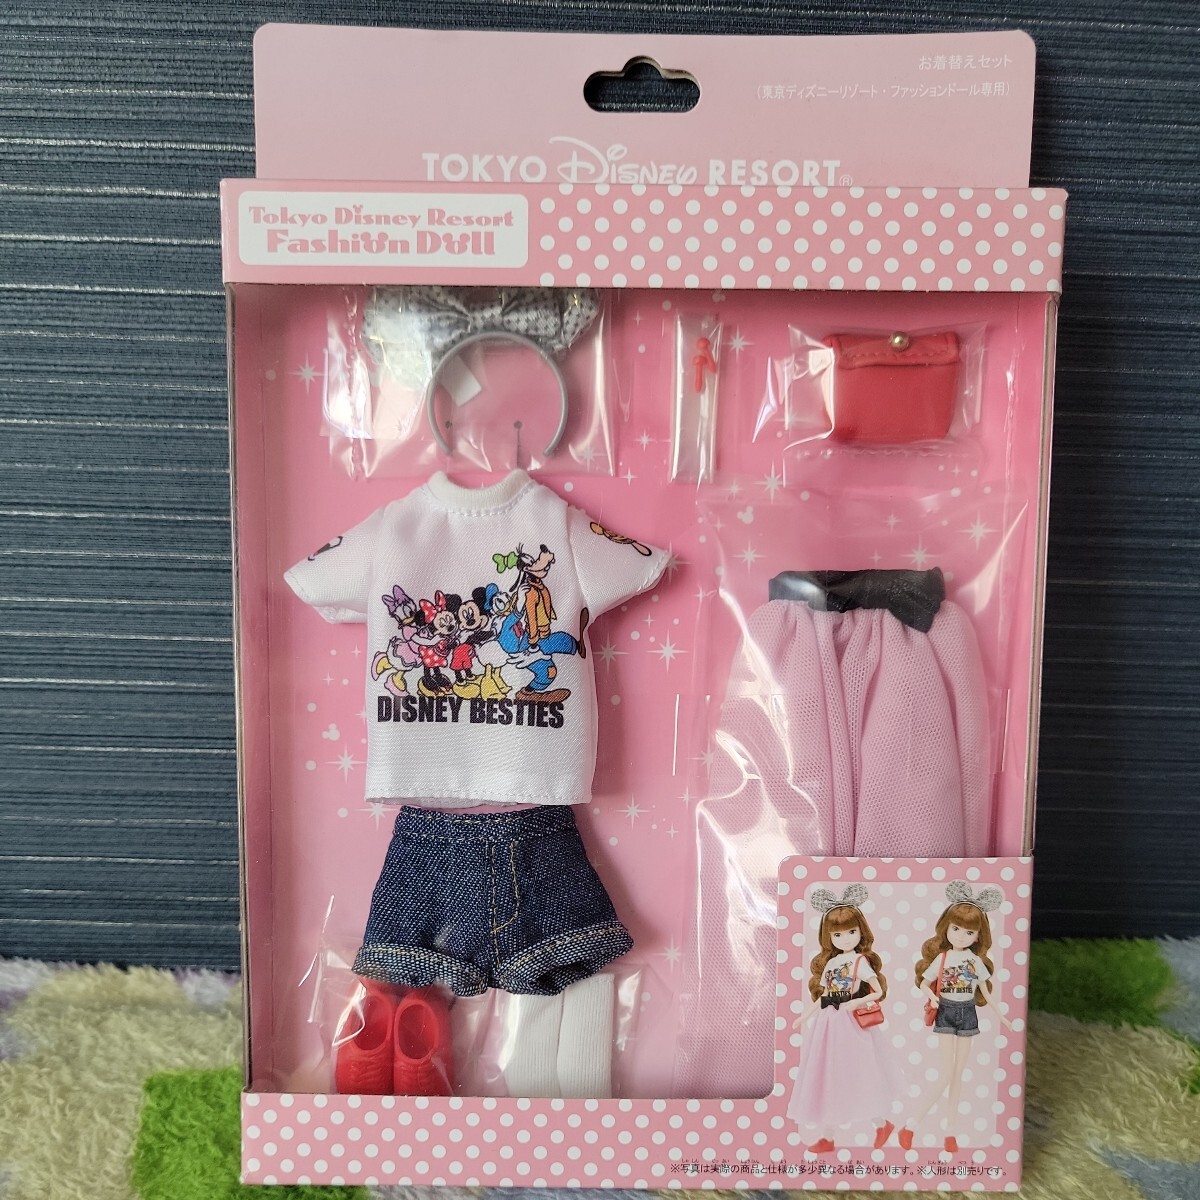  новый товар нераспечатанный # Tokyo Disney resort мода кукла для . надеты изменение комплект ( футболка шоу хлеб )